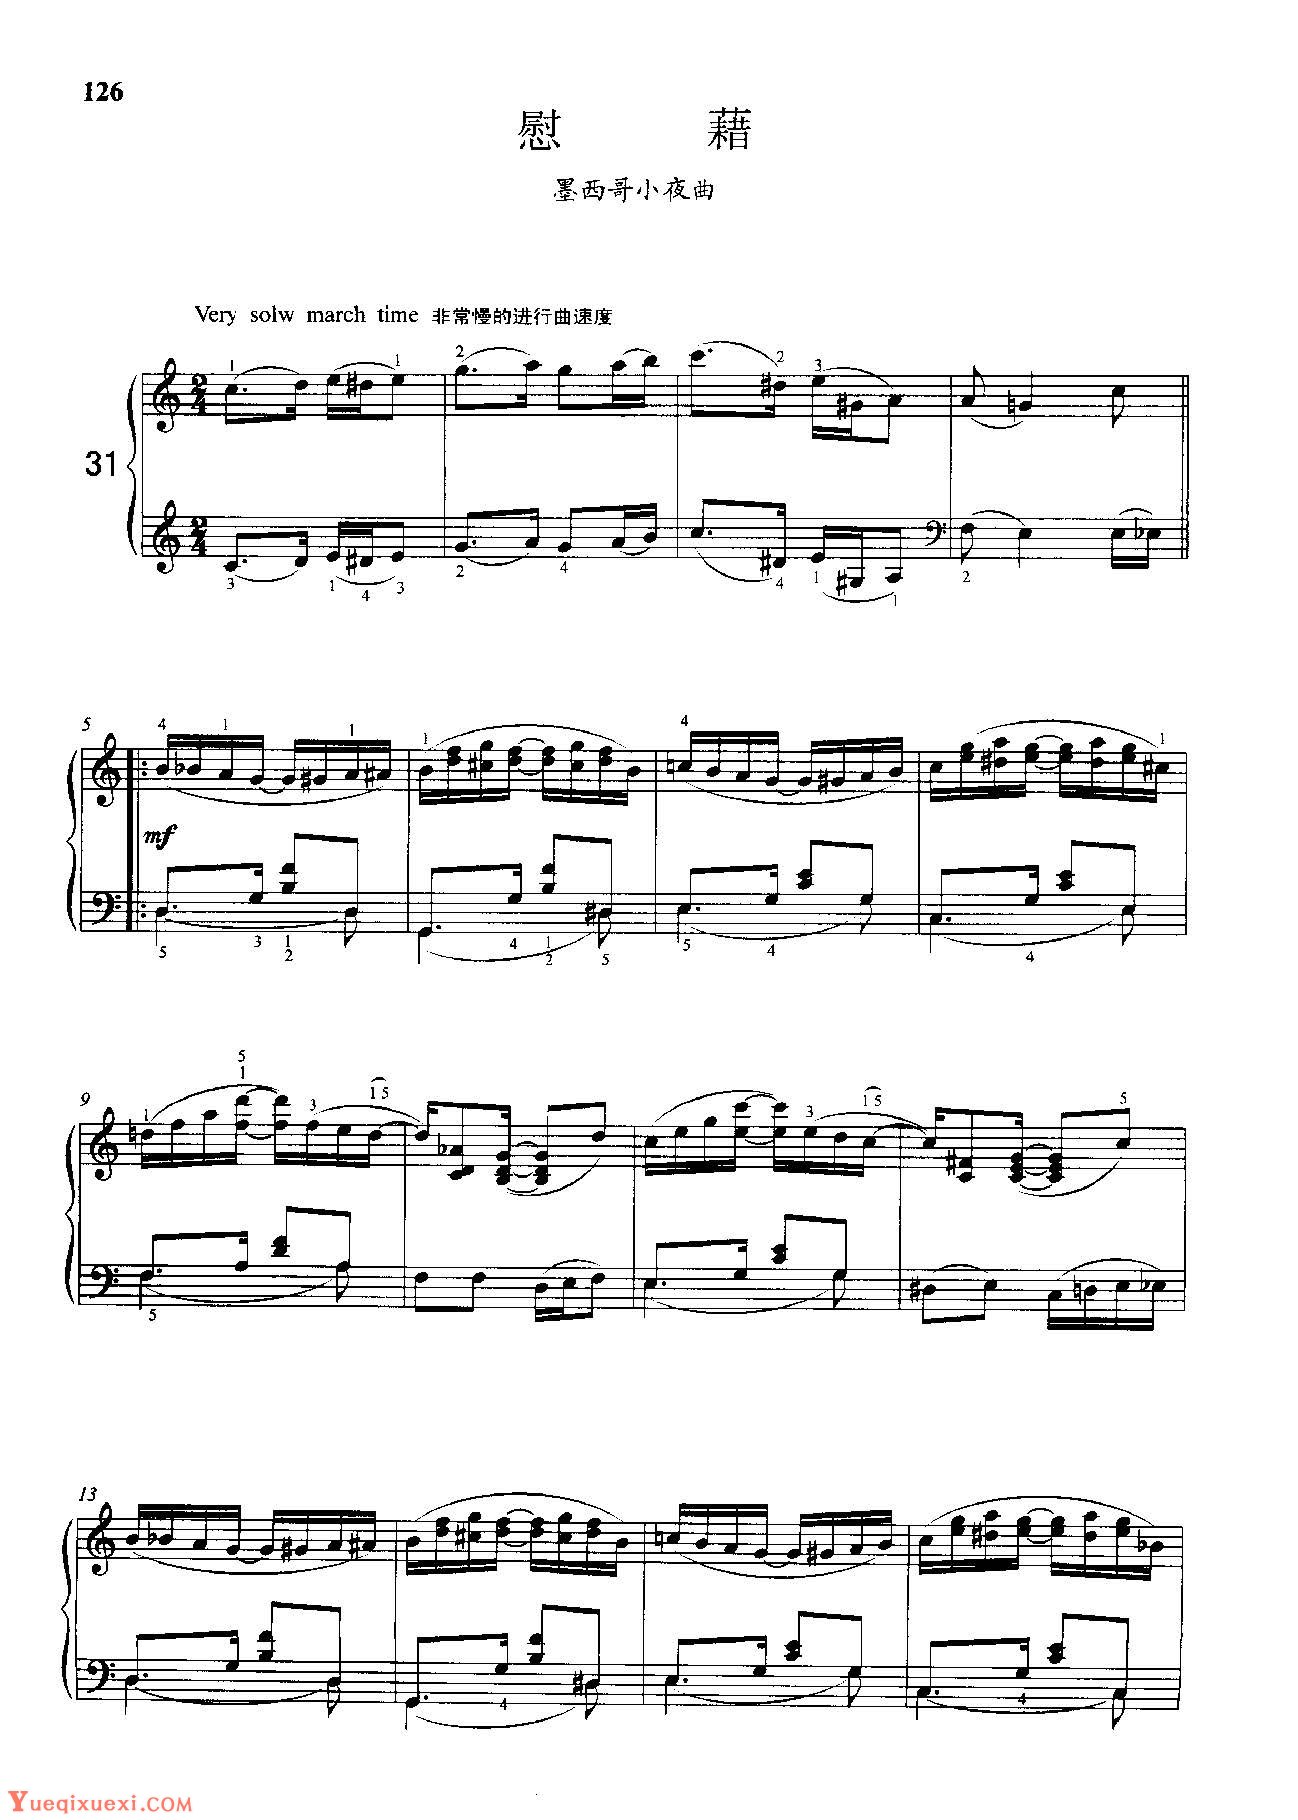 雷格泰姆钢琴乐谱《慰藉》雷格泰姆之王斯科特·乔普林